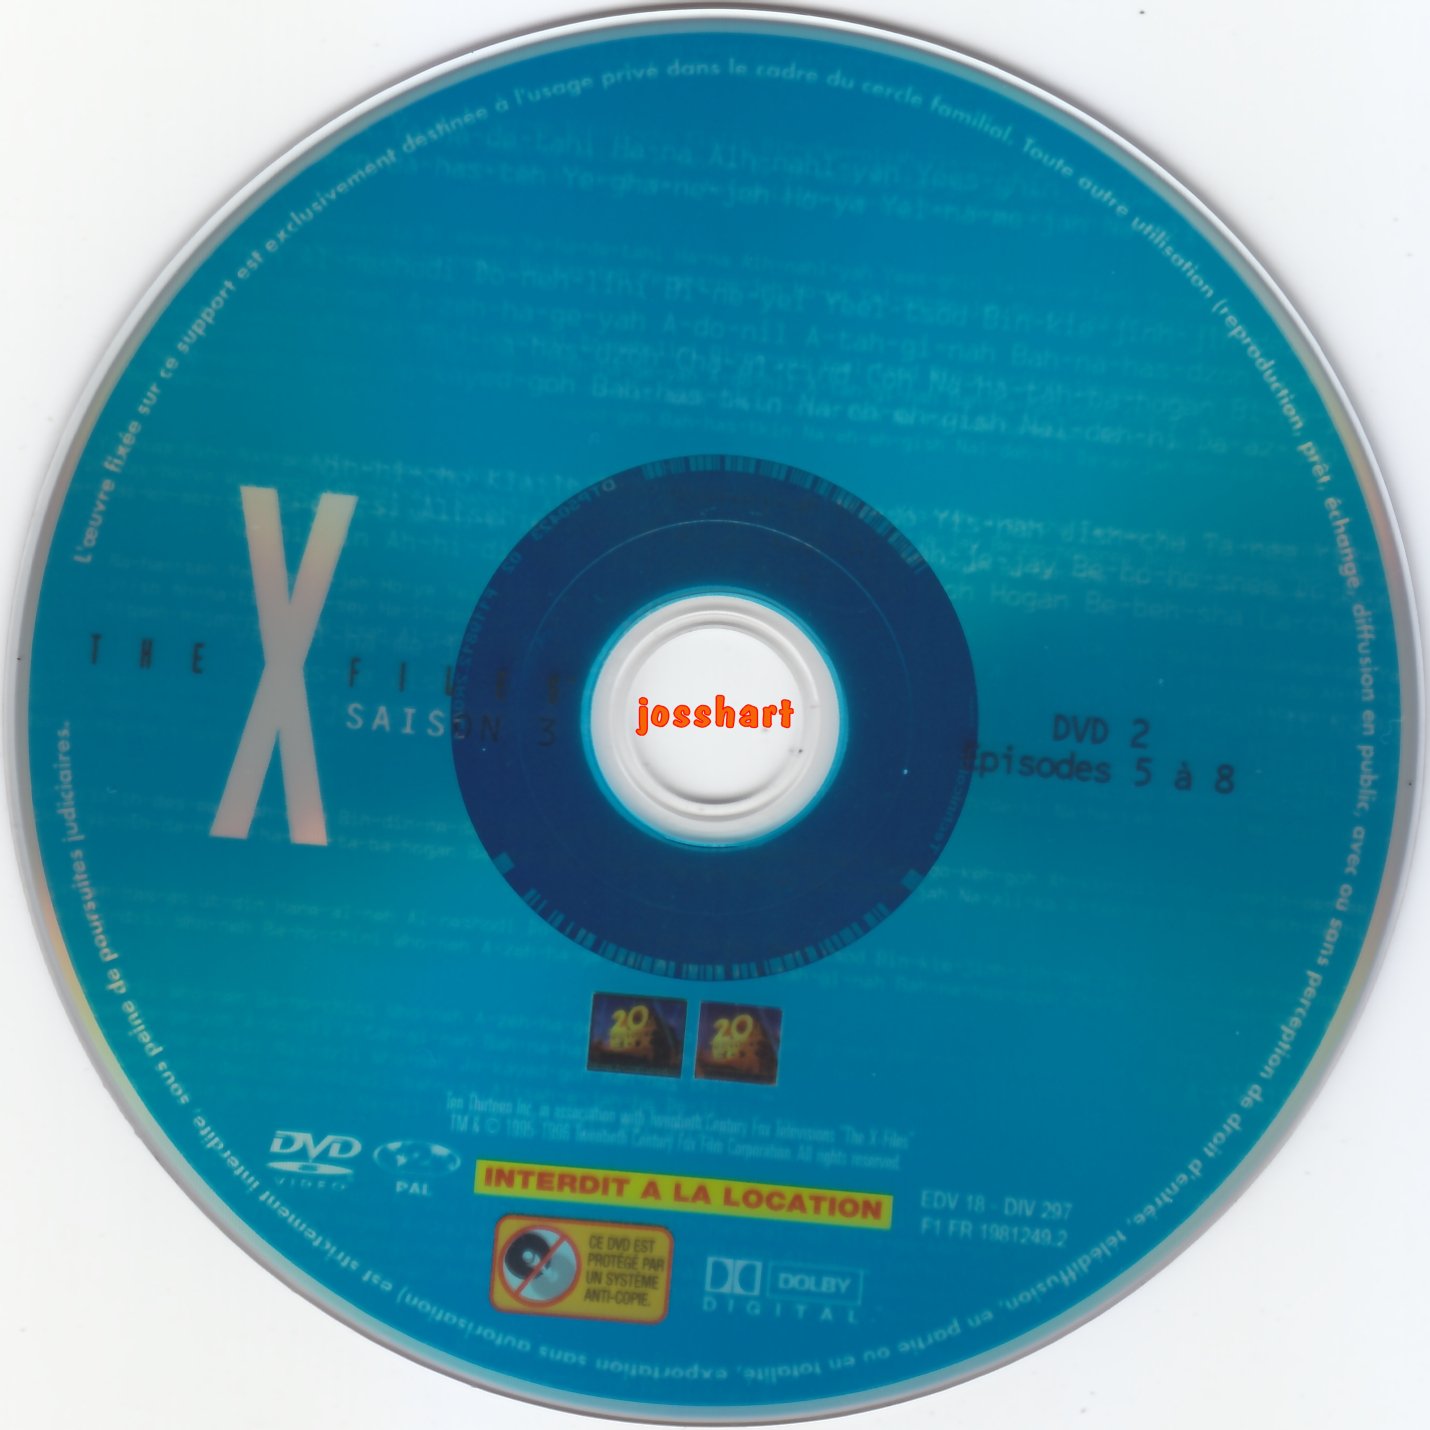 The X Files Saison 3 DVD 2 v2